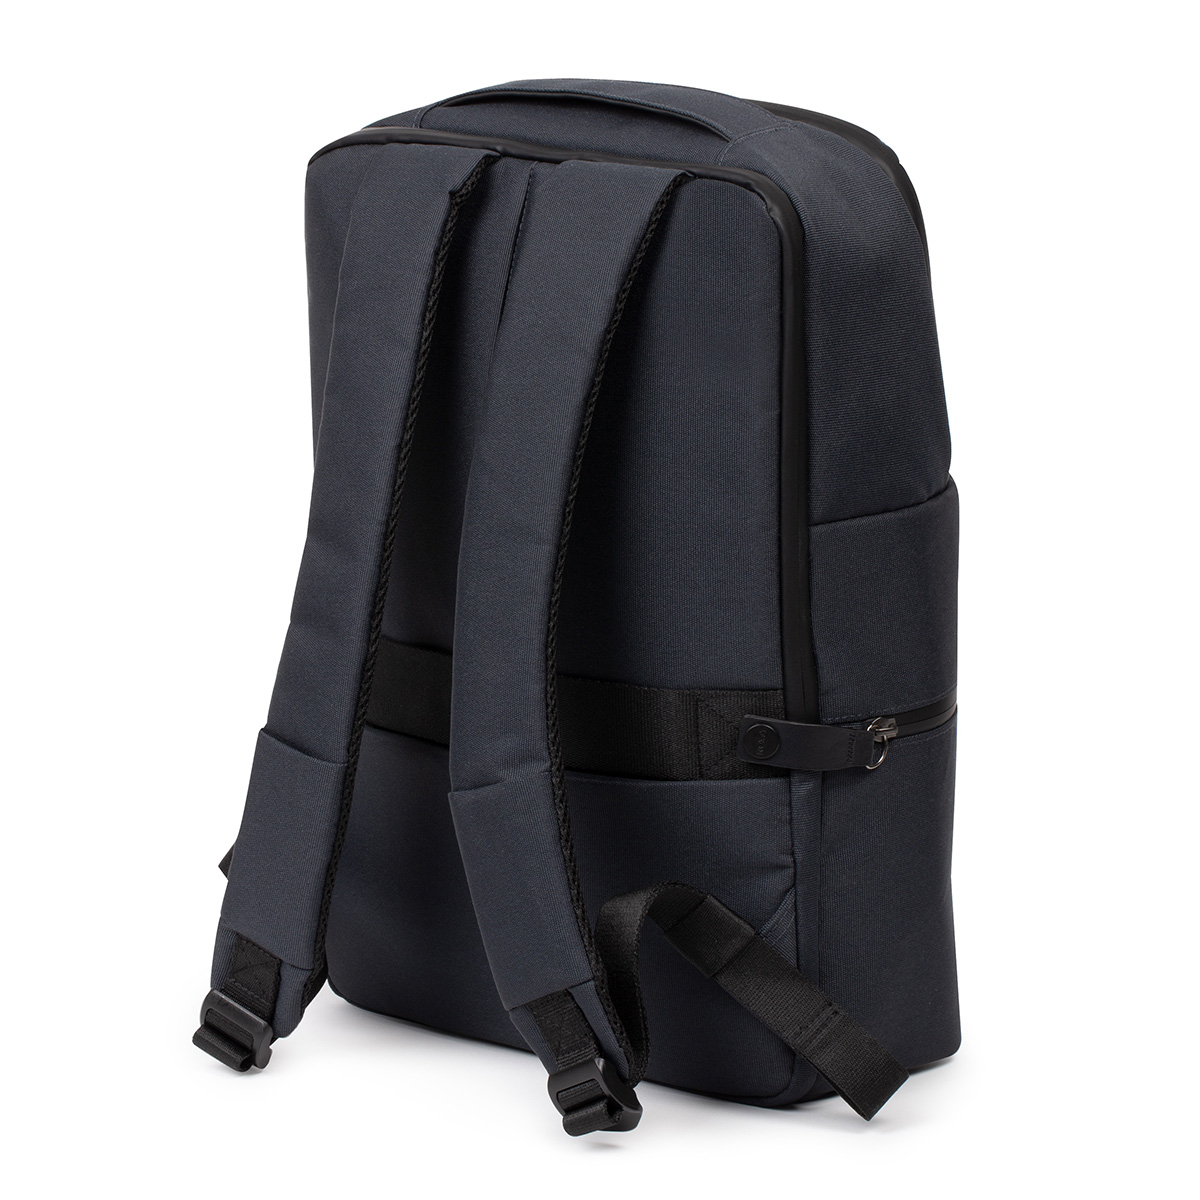 Balo Lexon Track Double Backpack